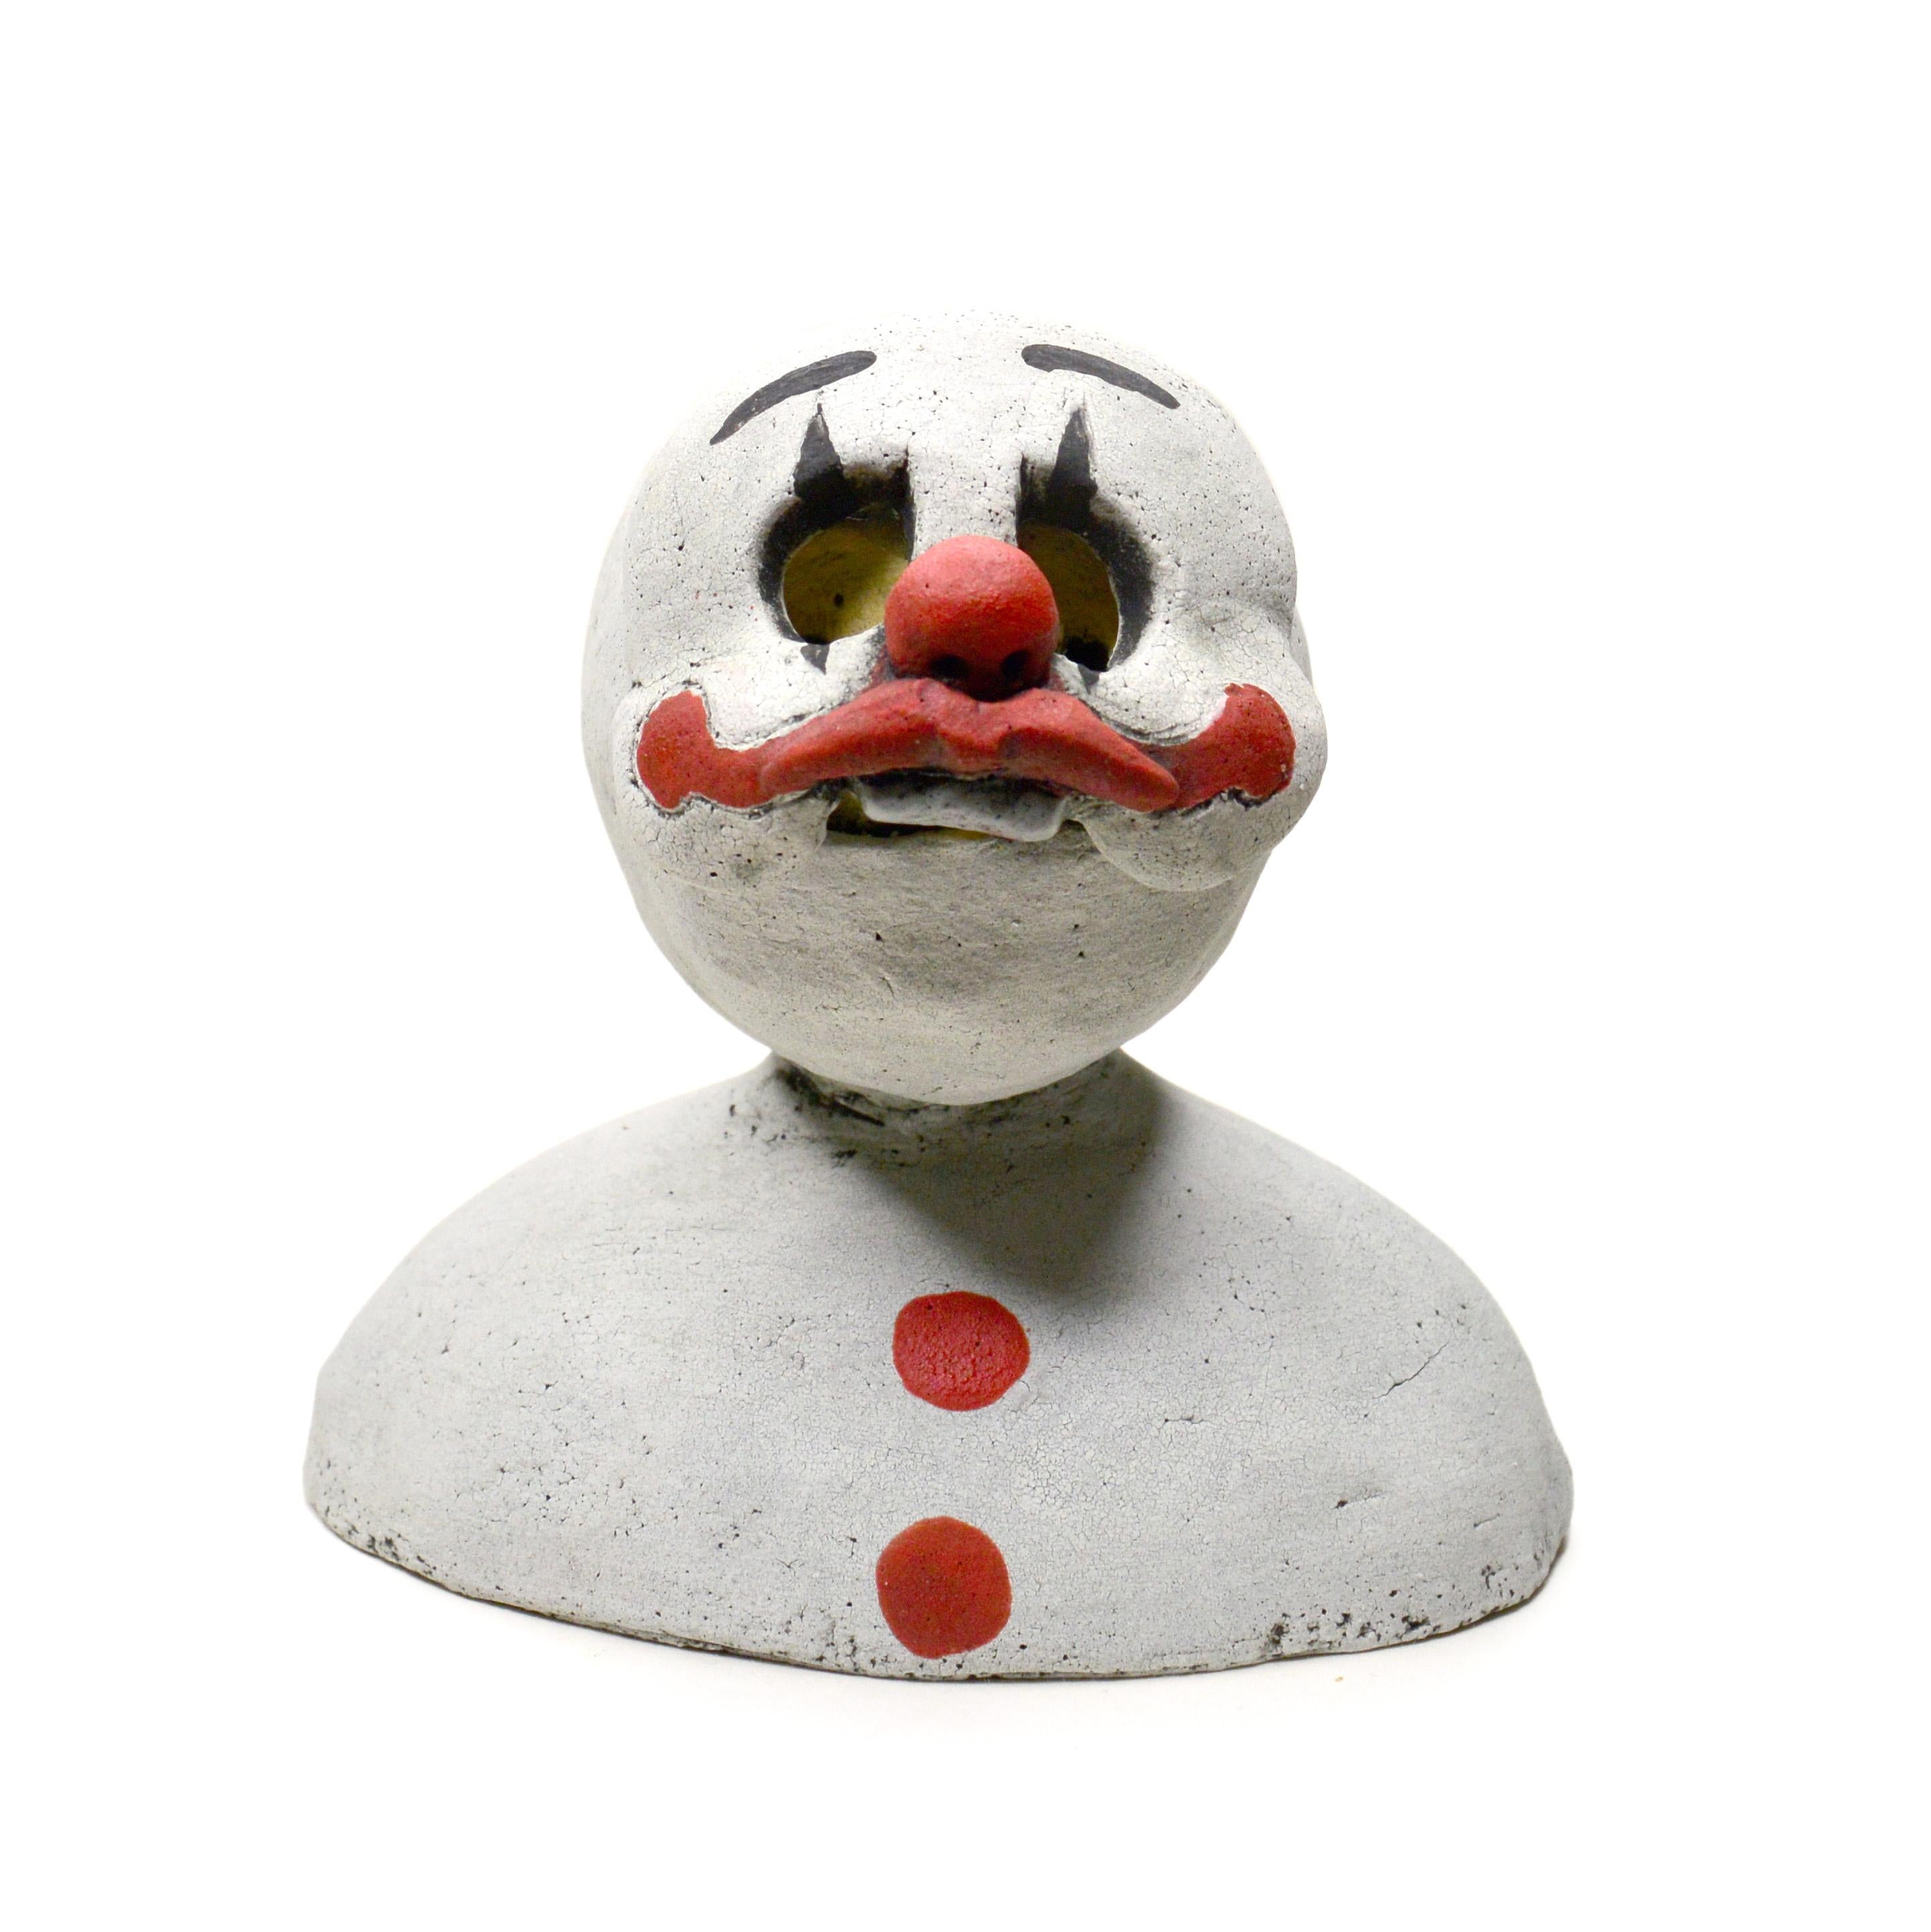 Renate Frotscher Figurative Sculpture - Pin·e·co 011 Original Ceramic Sculpture with clown mask